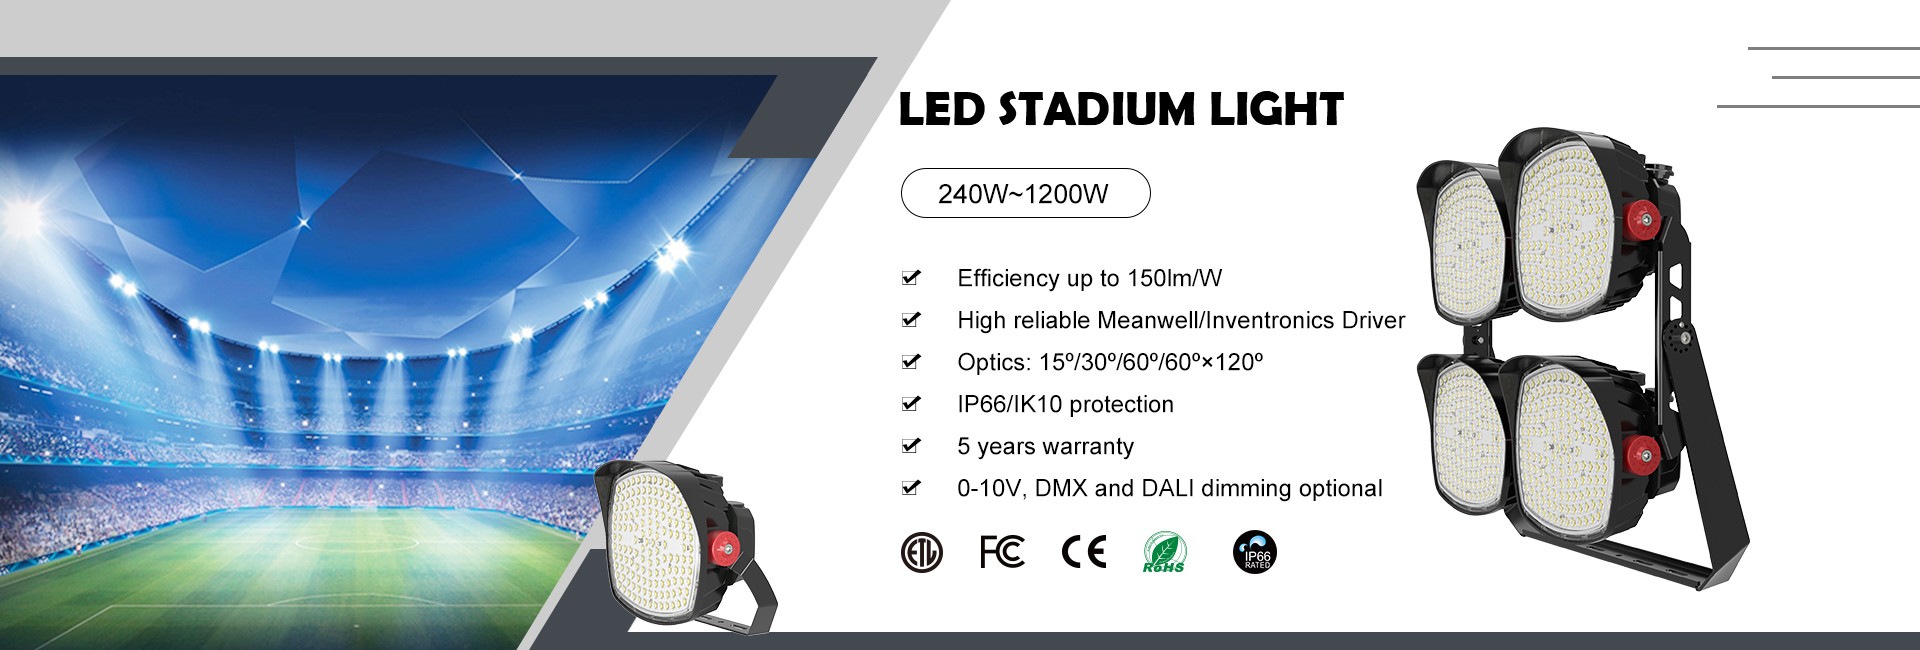 LED Stadium Lights